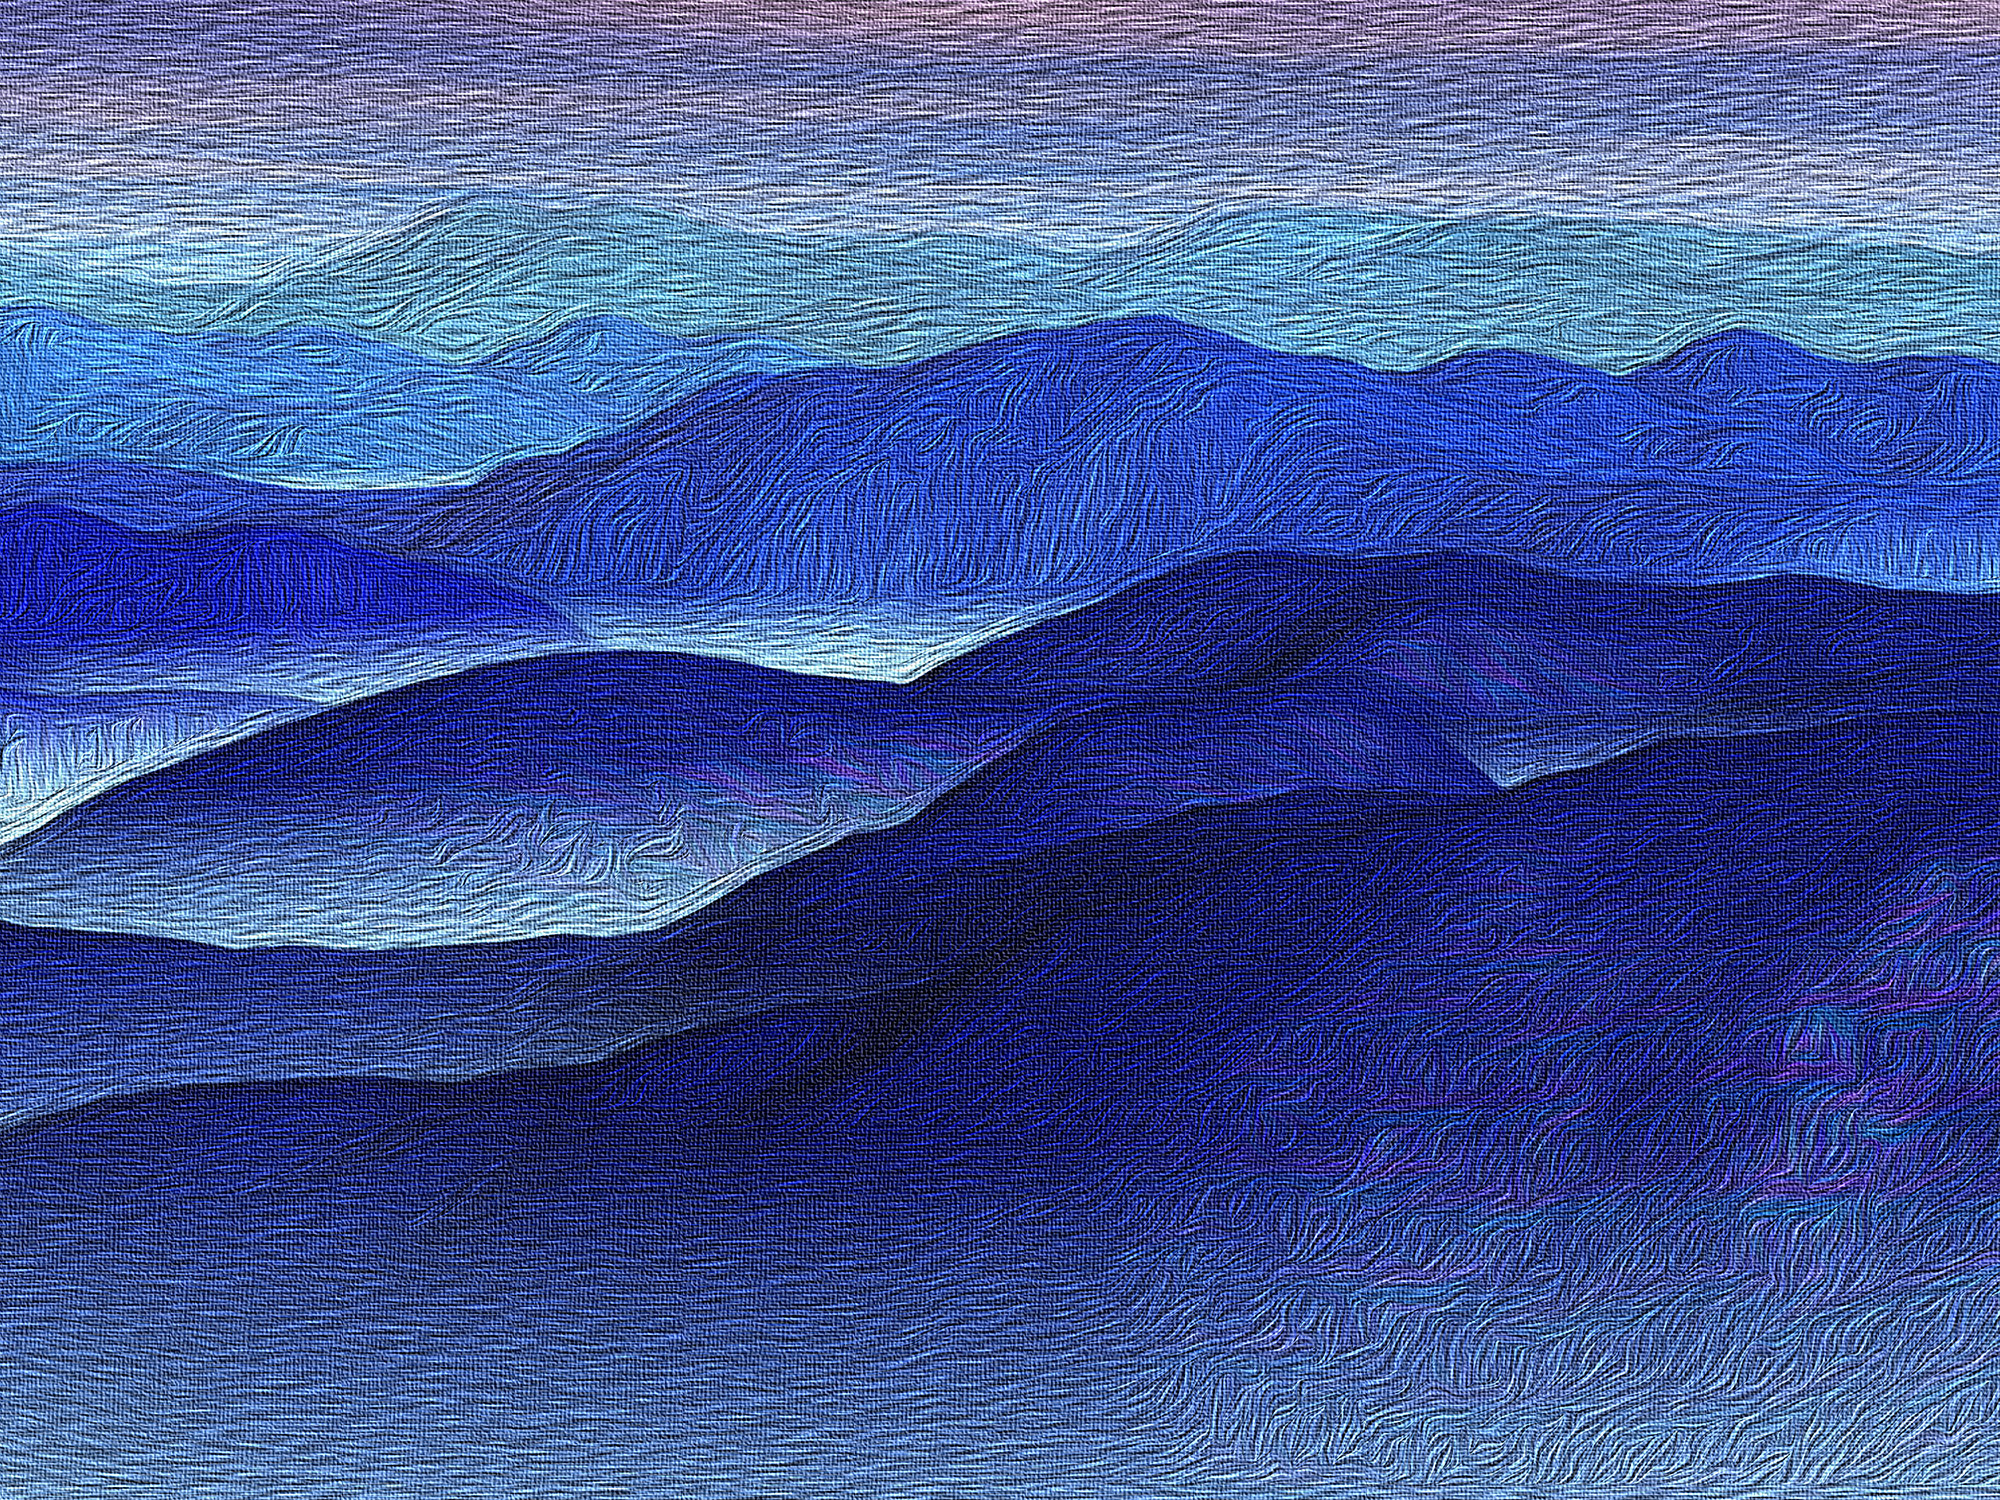 Blue Ridge fine art by David Sloan